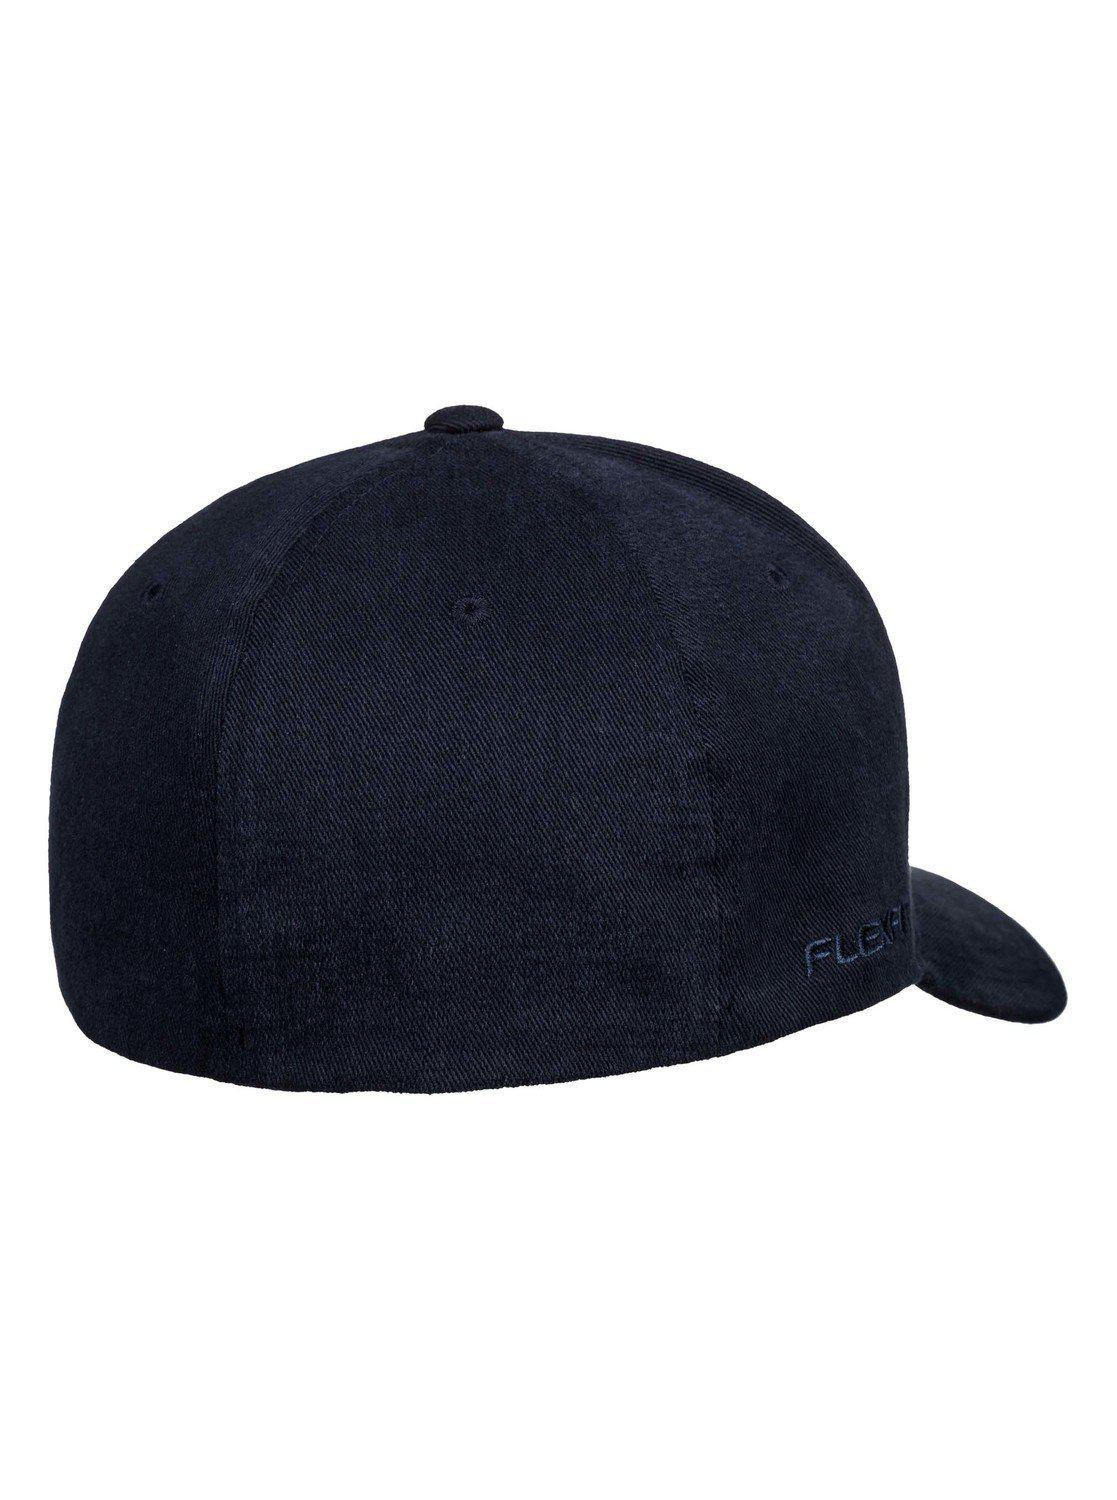 Sidestay Flexfit® Hat